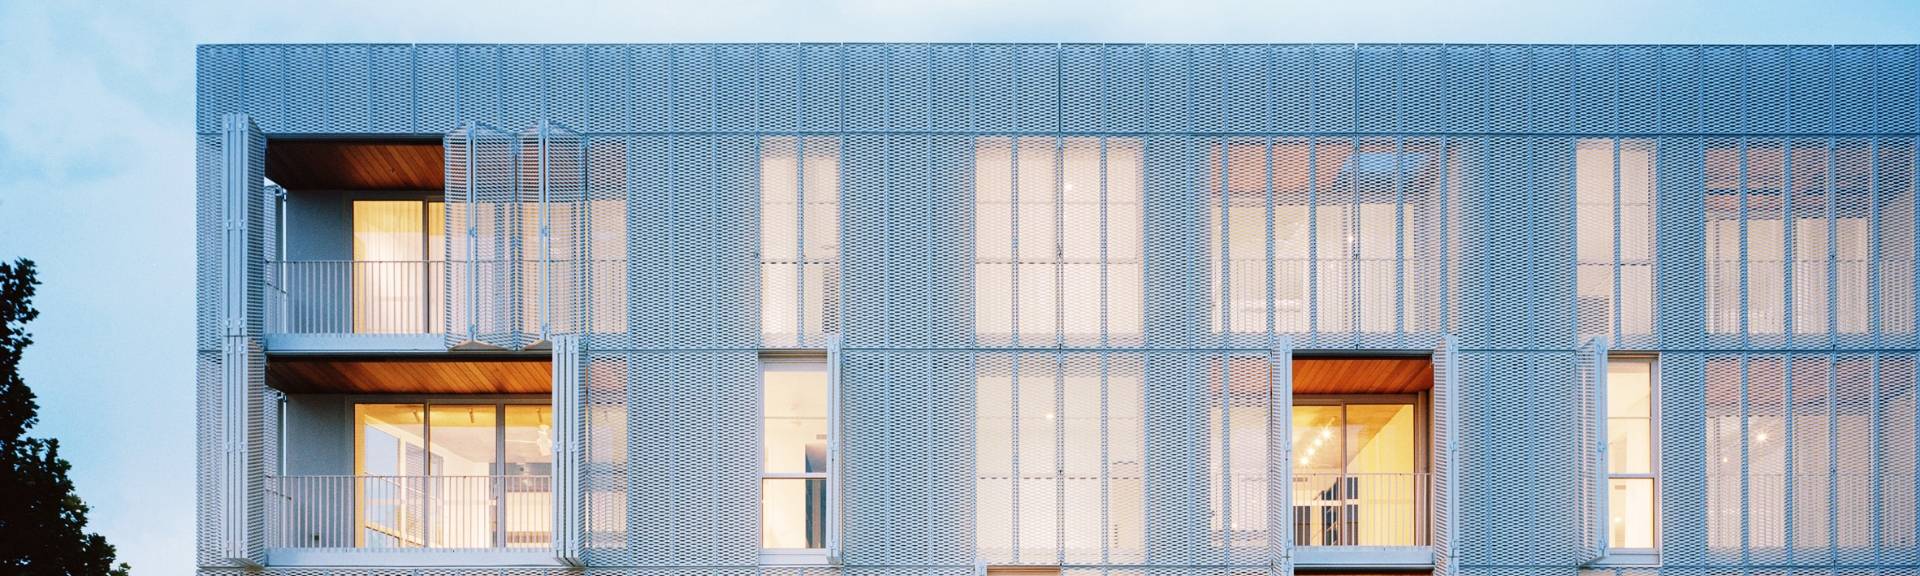 Bürogebäude dekoriert mit Argger architekto nische Netz fassade